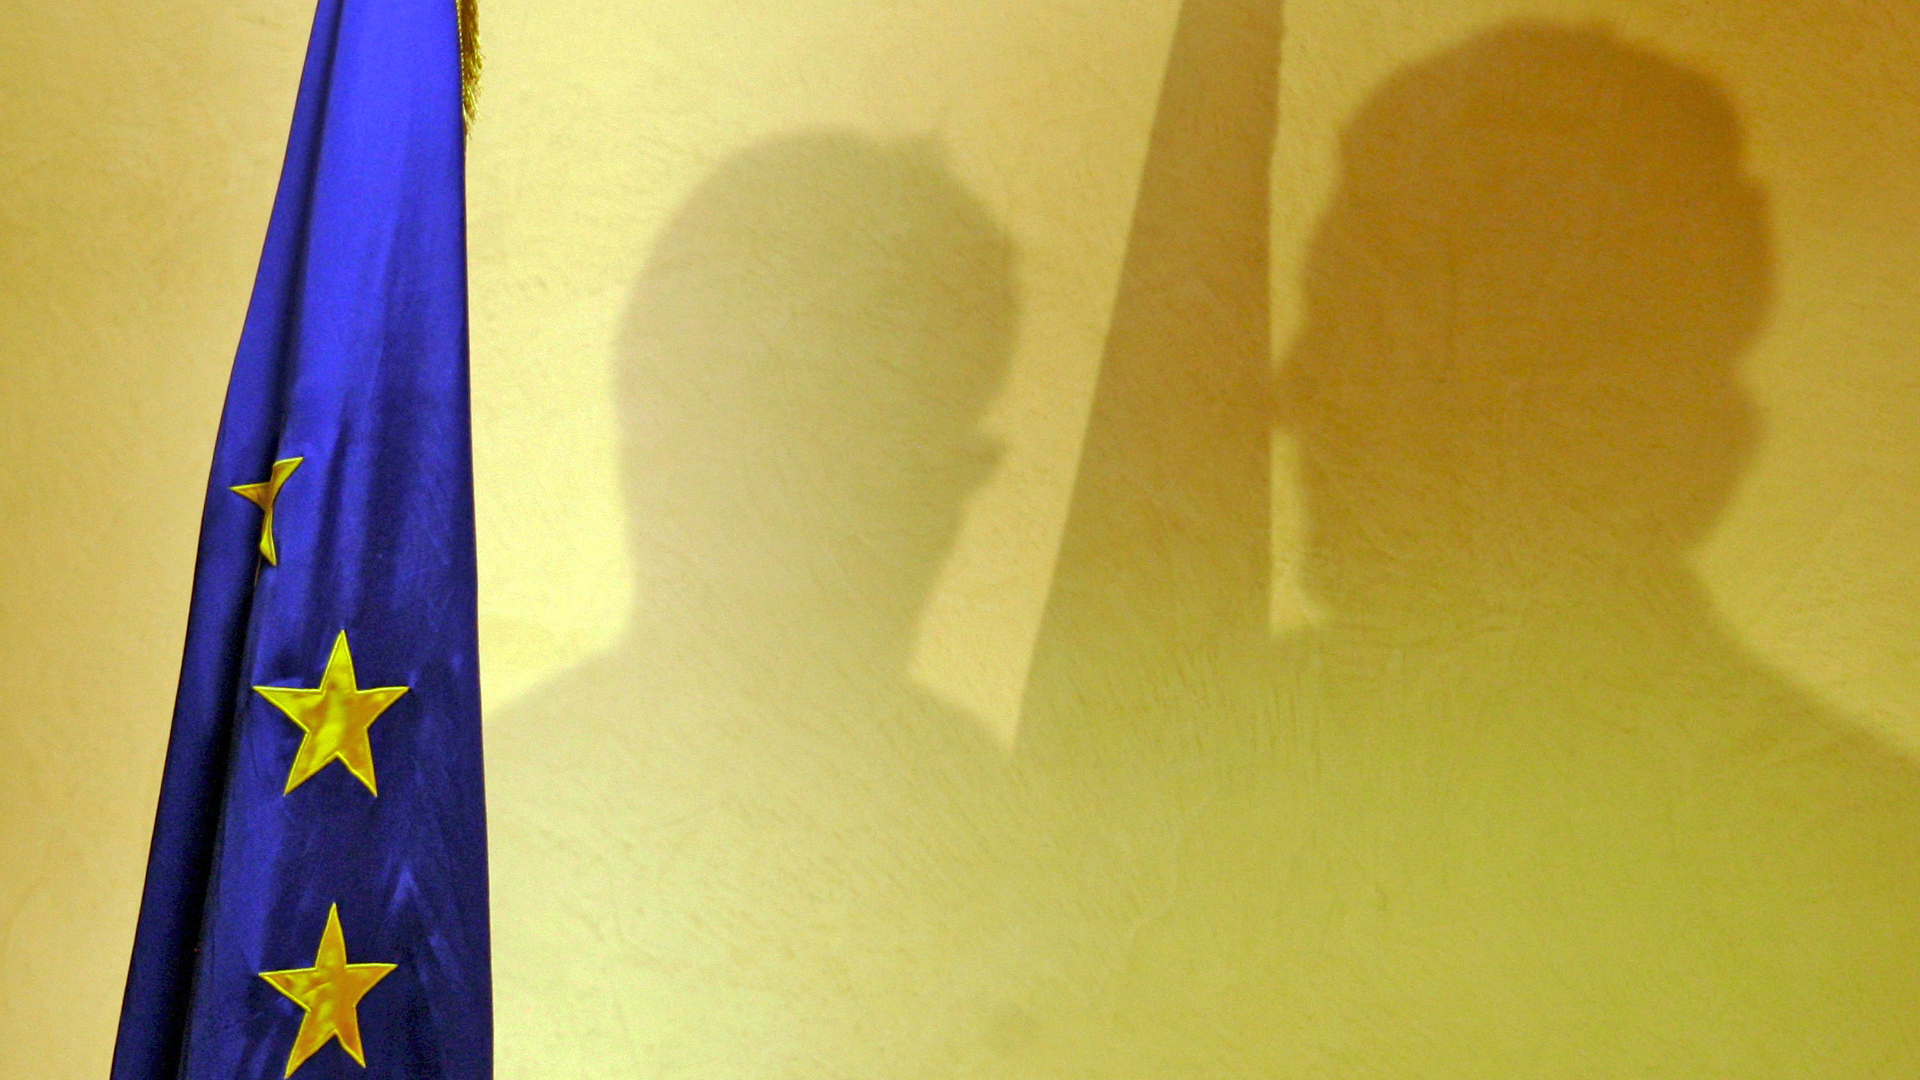 Schatten von Personen neben einer EU-Flagge | picture-alliance/ dpa/dpaweb